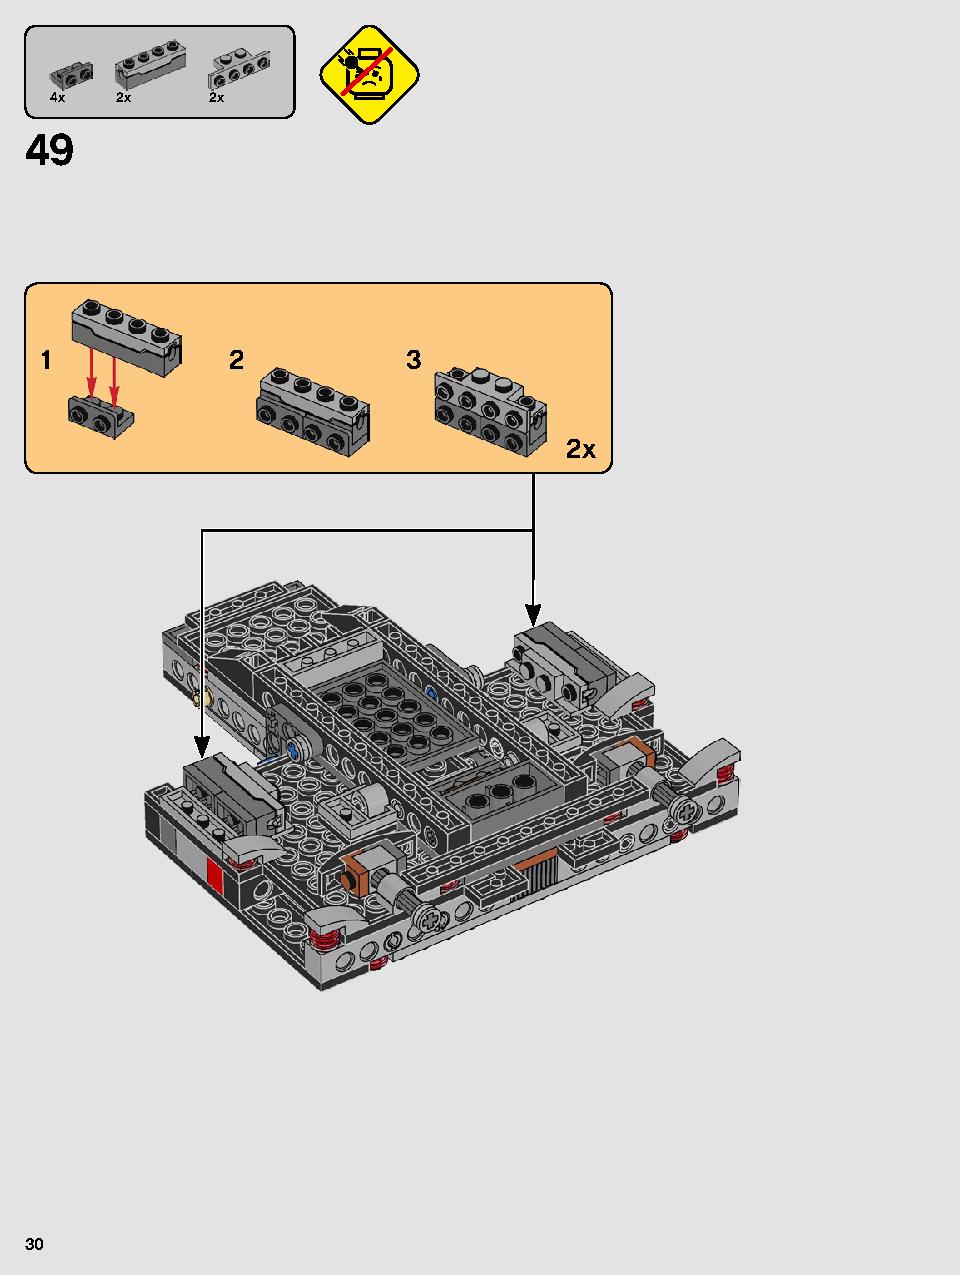 스타워즈 카일로 렌의 셔틀™ 75256 레고 세트 제품정보 레고 조립설명서 30 page